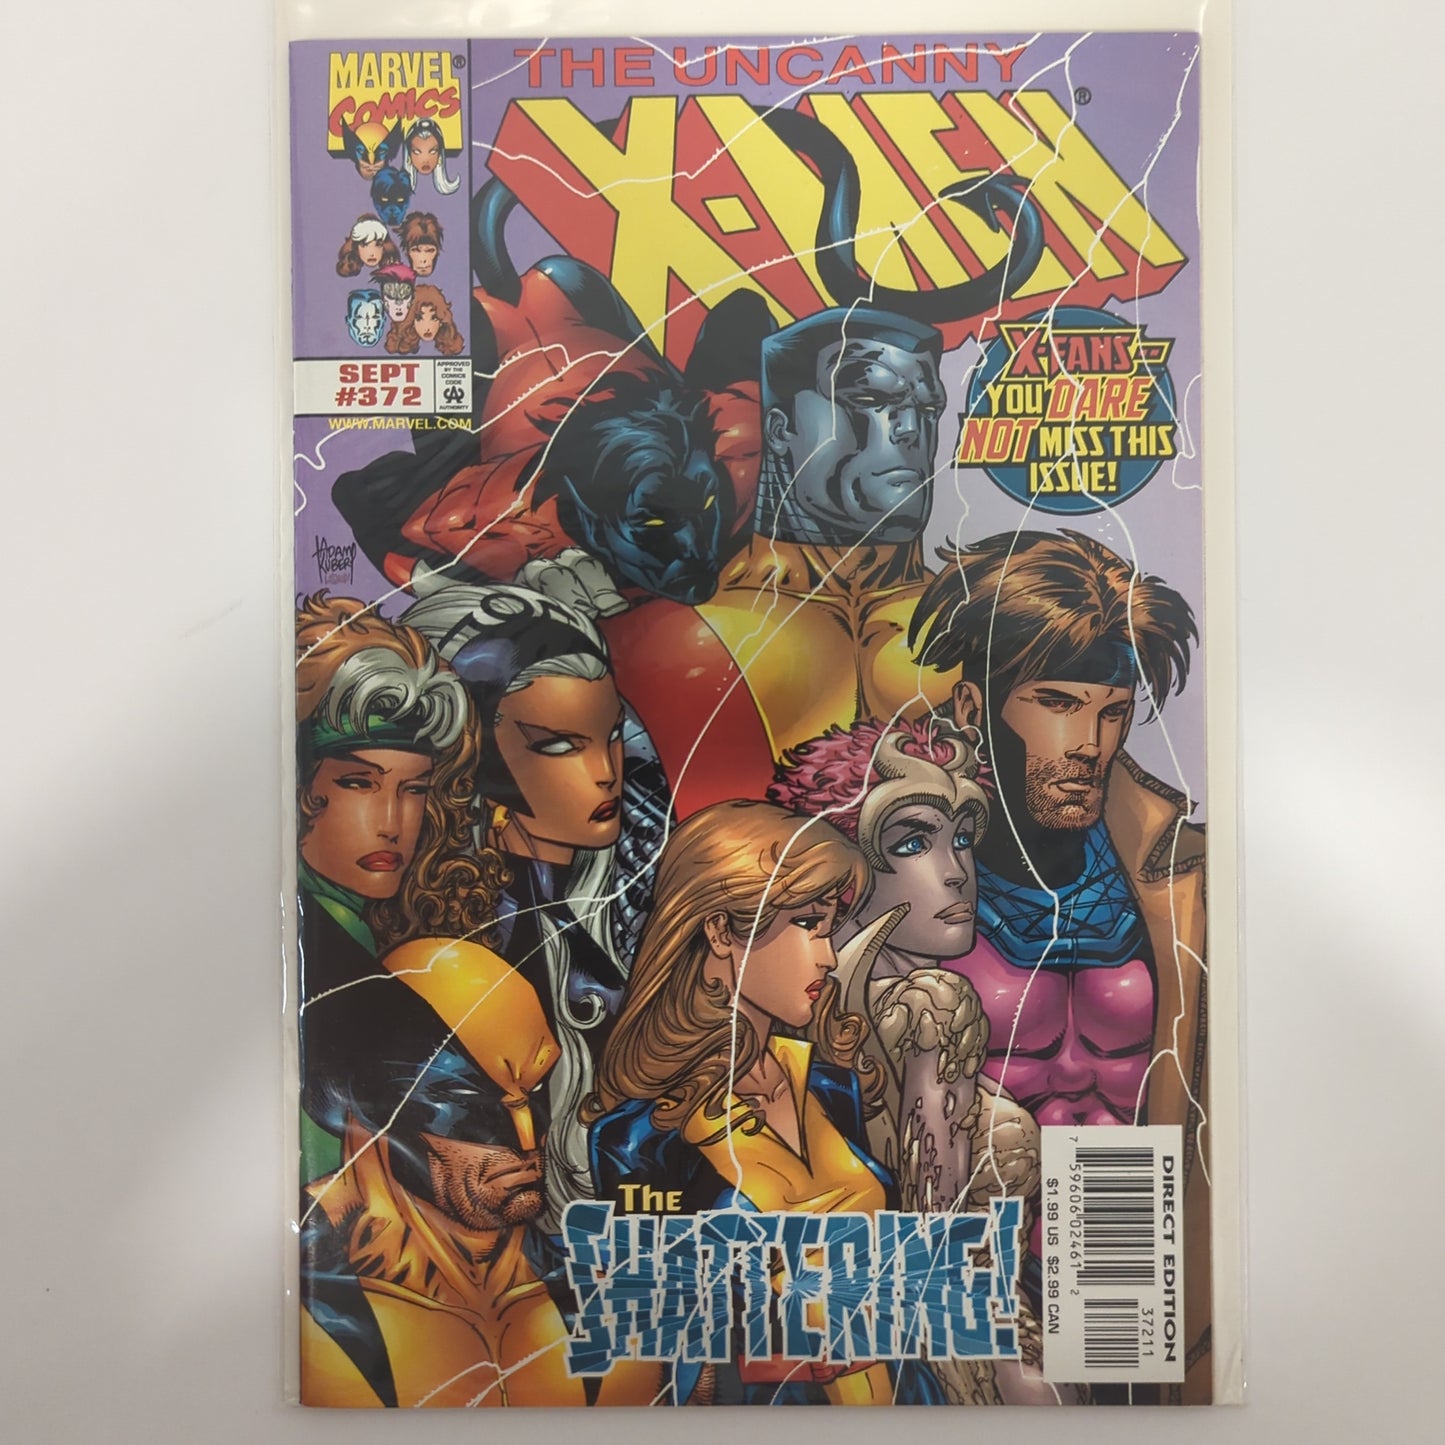 The Uncanny X-Men #372